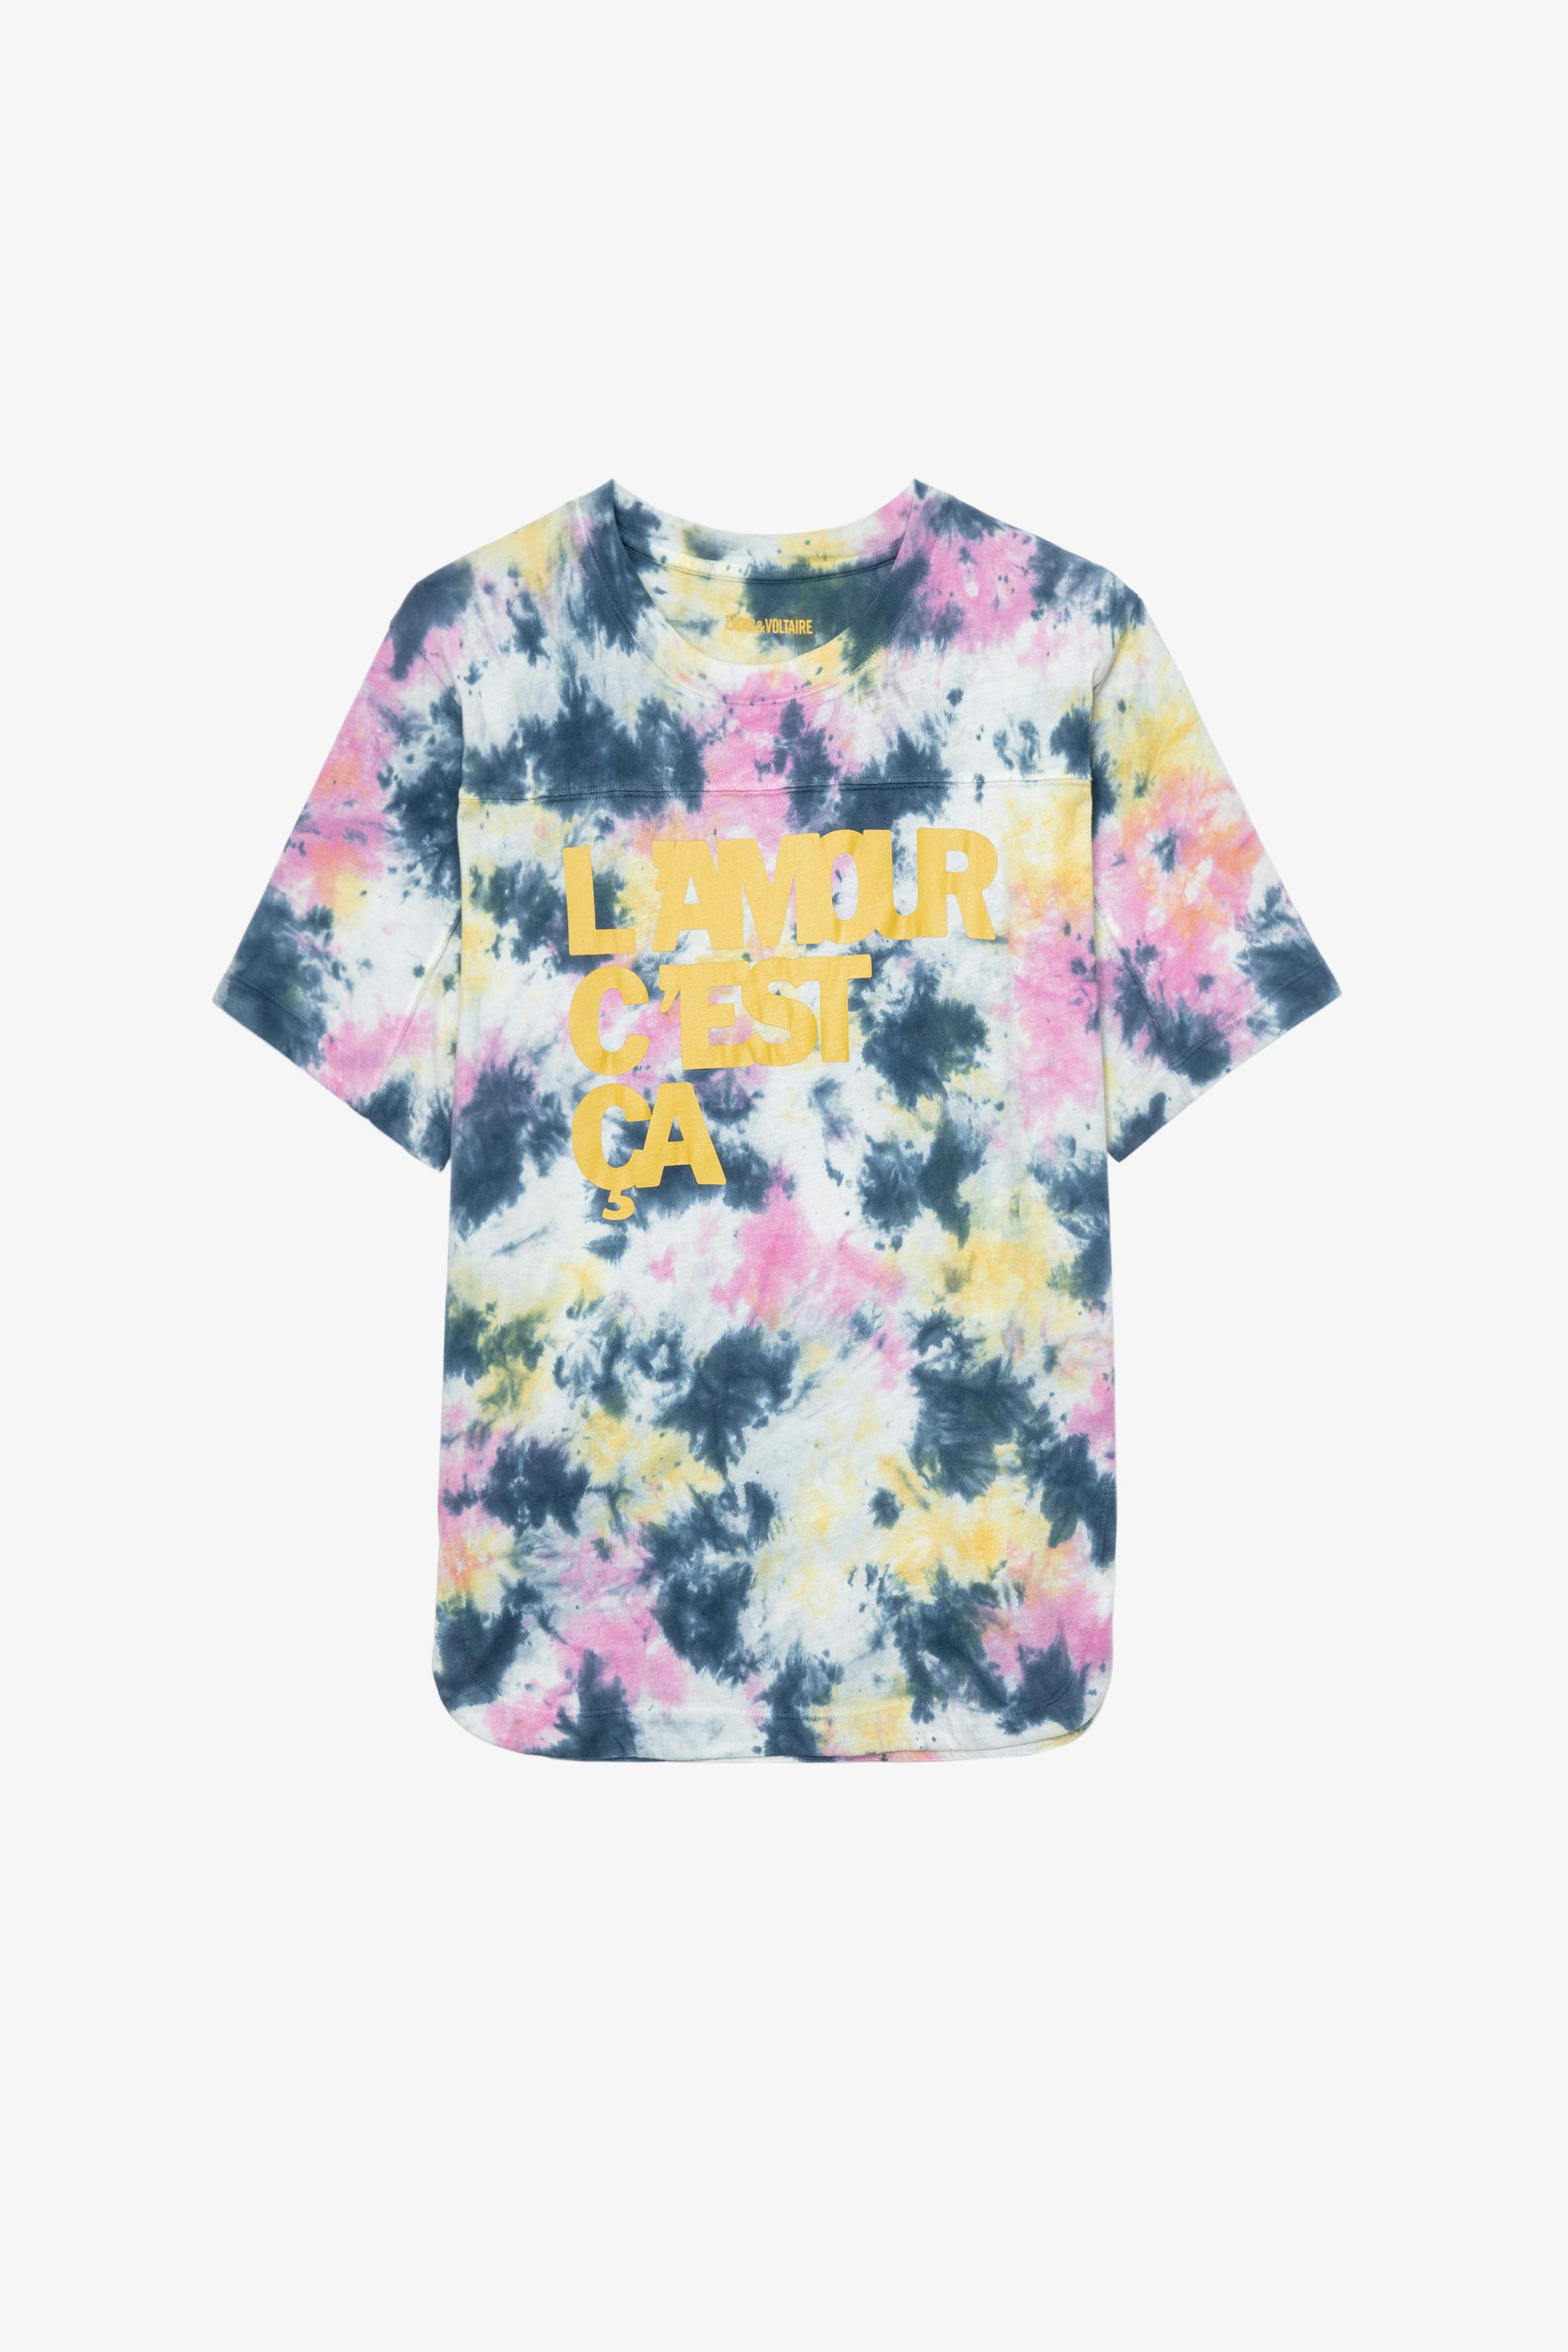 Bow L'amour c'est ça Ｔシャツ Women's “L'amour c'est ça” T-shirt in multicoloured tie-dye cotton